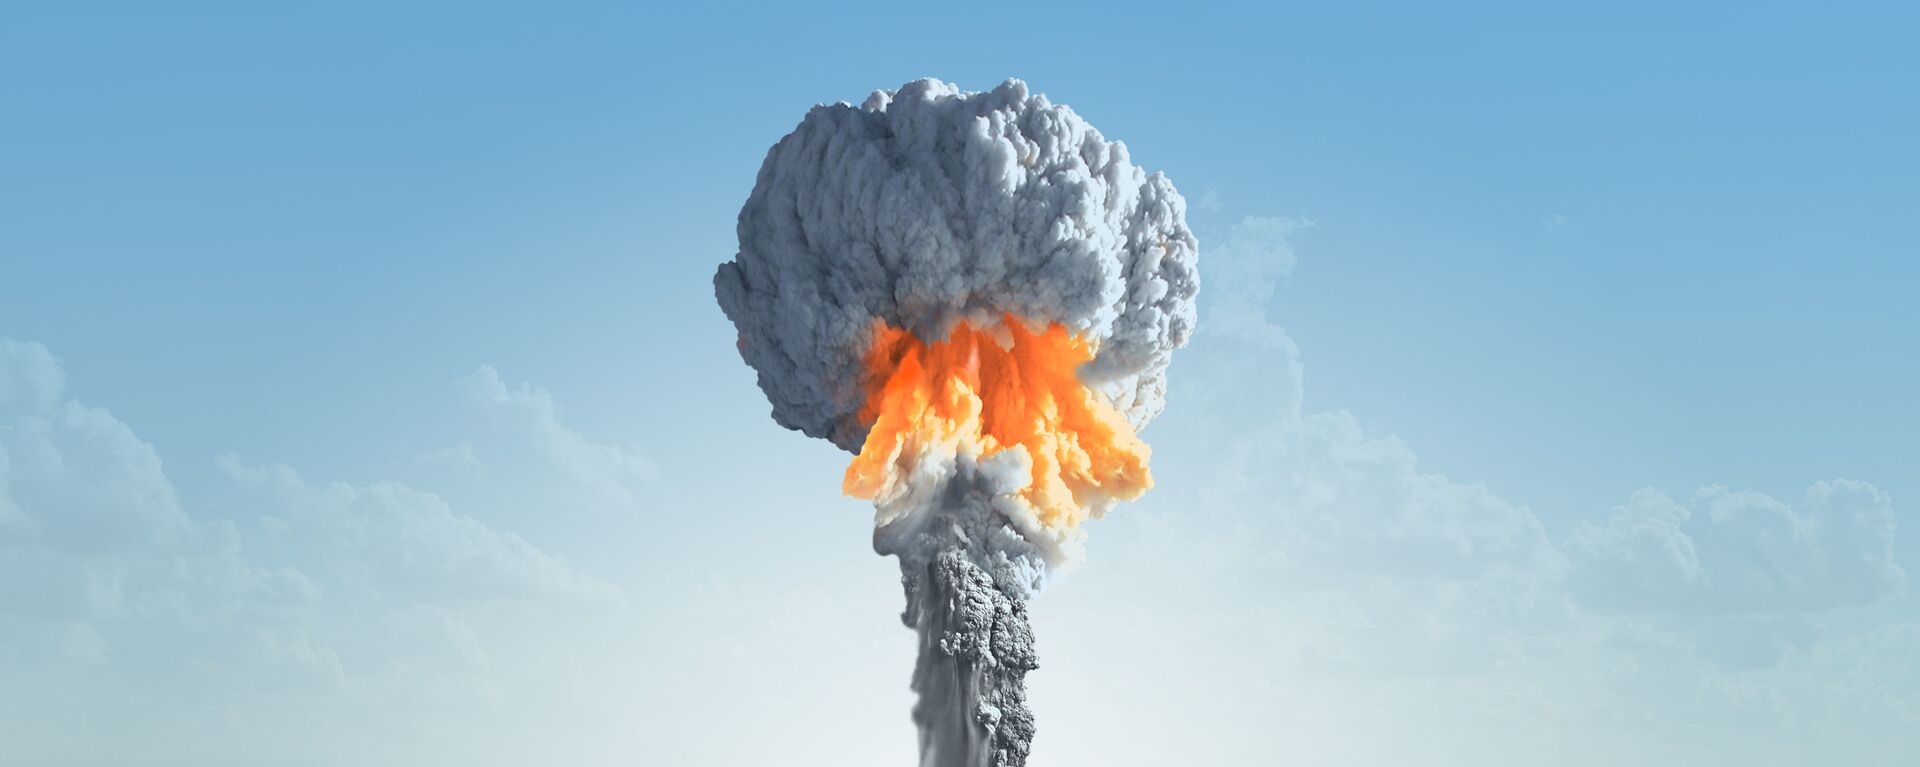 انفجار نووي - سبوتنيك عربي, 1920, 21.02.2019